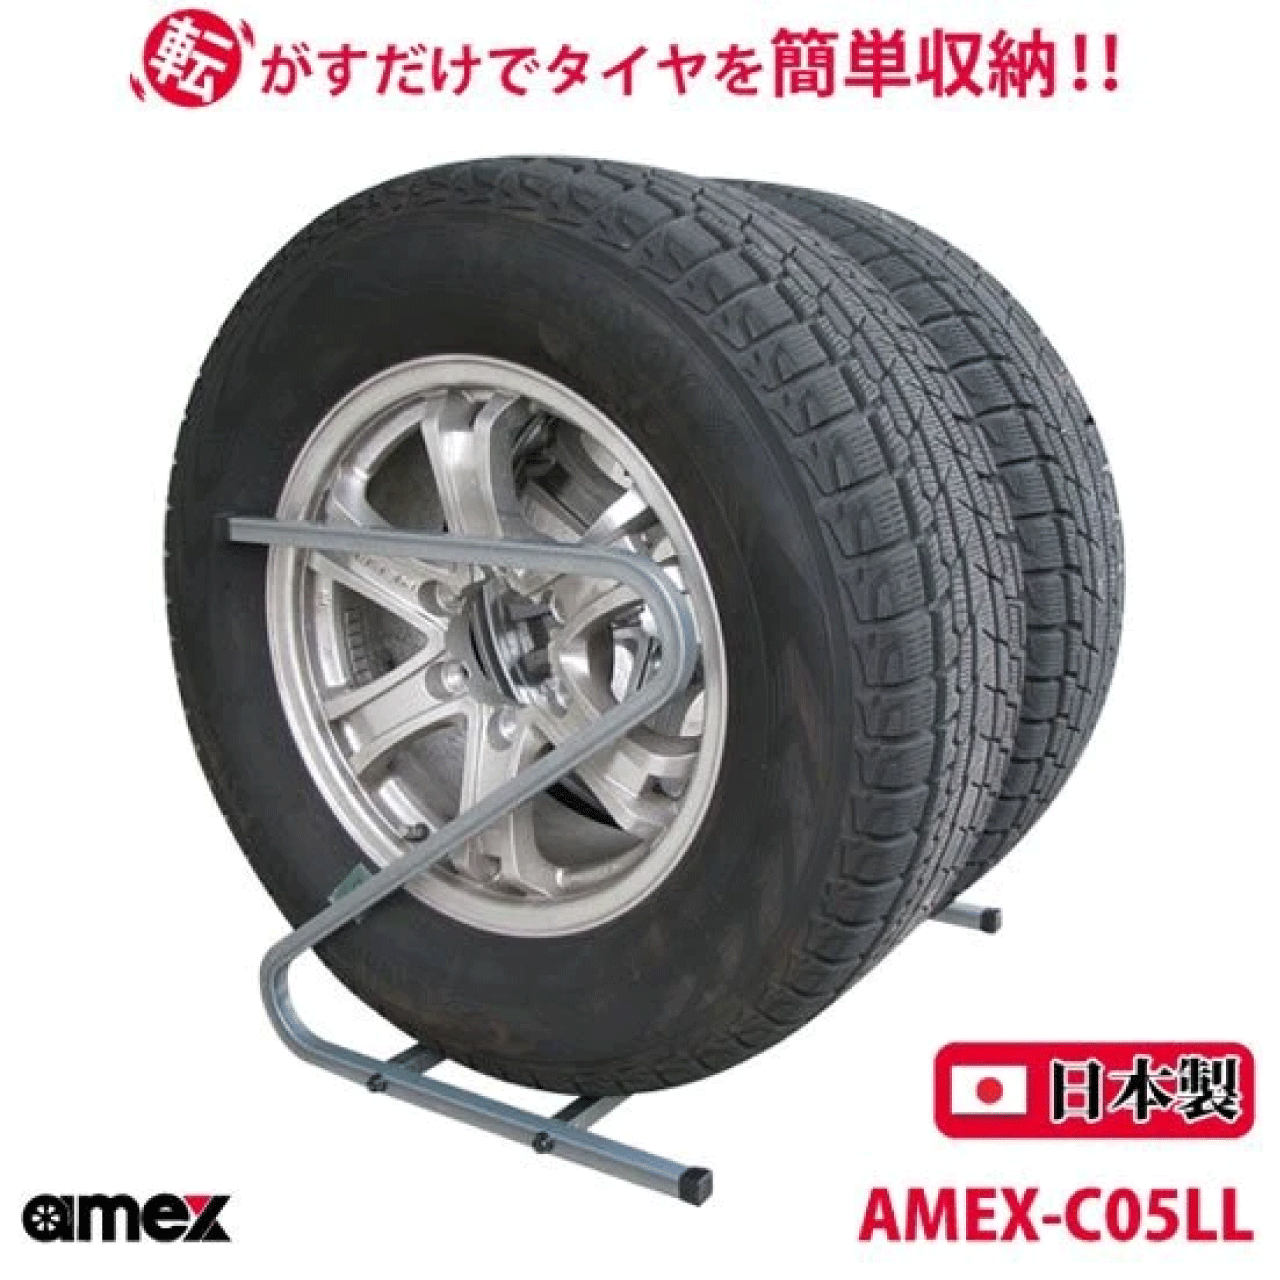 タイヤラック 245?285mm 大型自動車タイヤ対応 AMEX-C05LL Z型 転がすだけで簡単収納 ZAM材をコーティ..